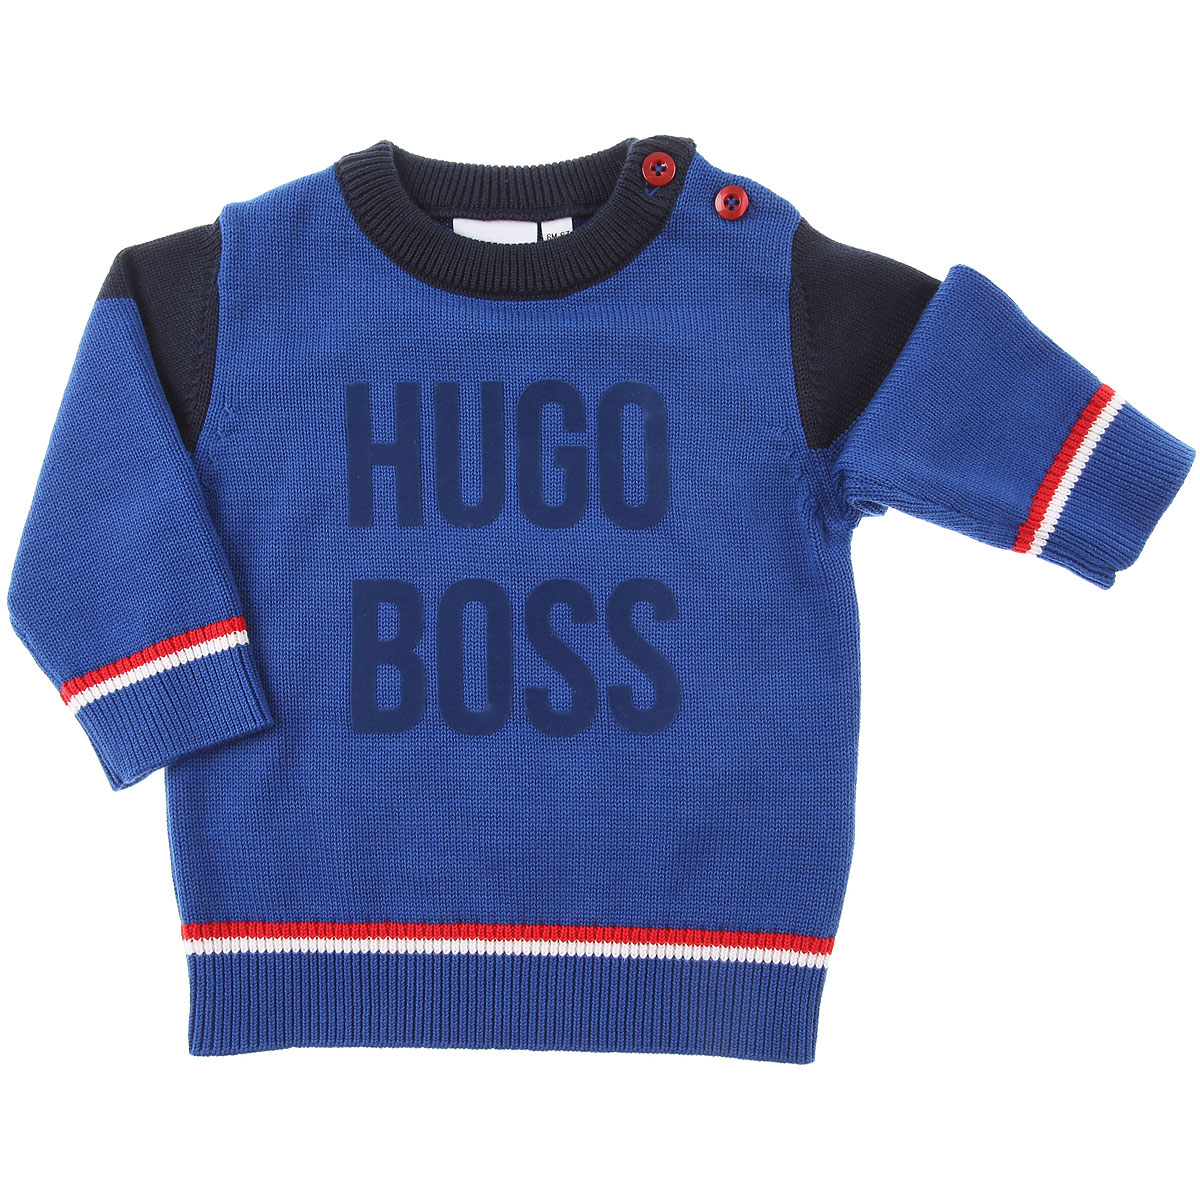 Футболка для мальчика Hugo Boss. Футболка для мальчика Хьюго босс. Хьюго босс детский. Hugo одежда 2023.